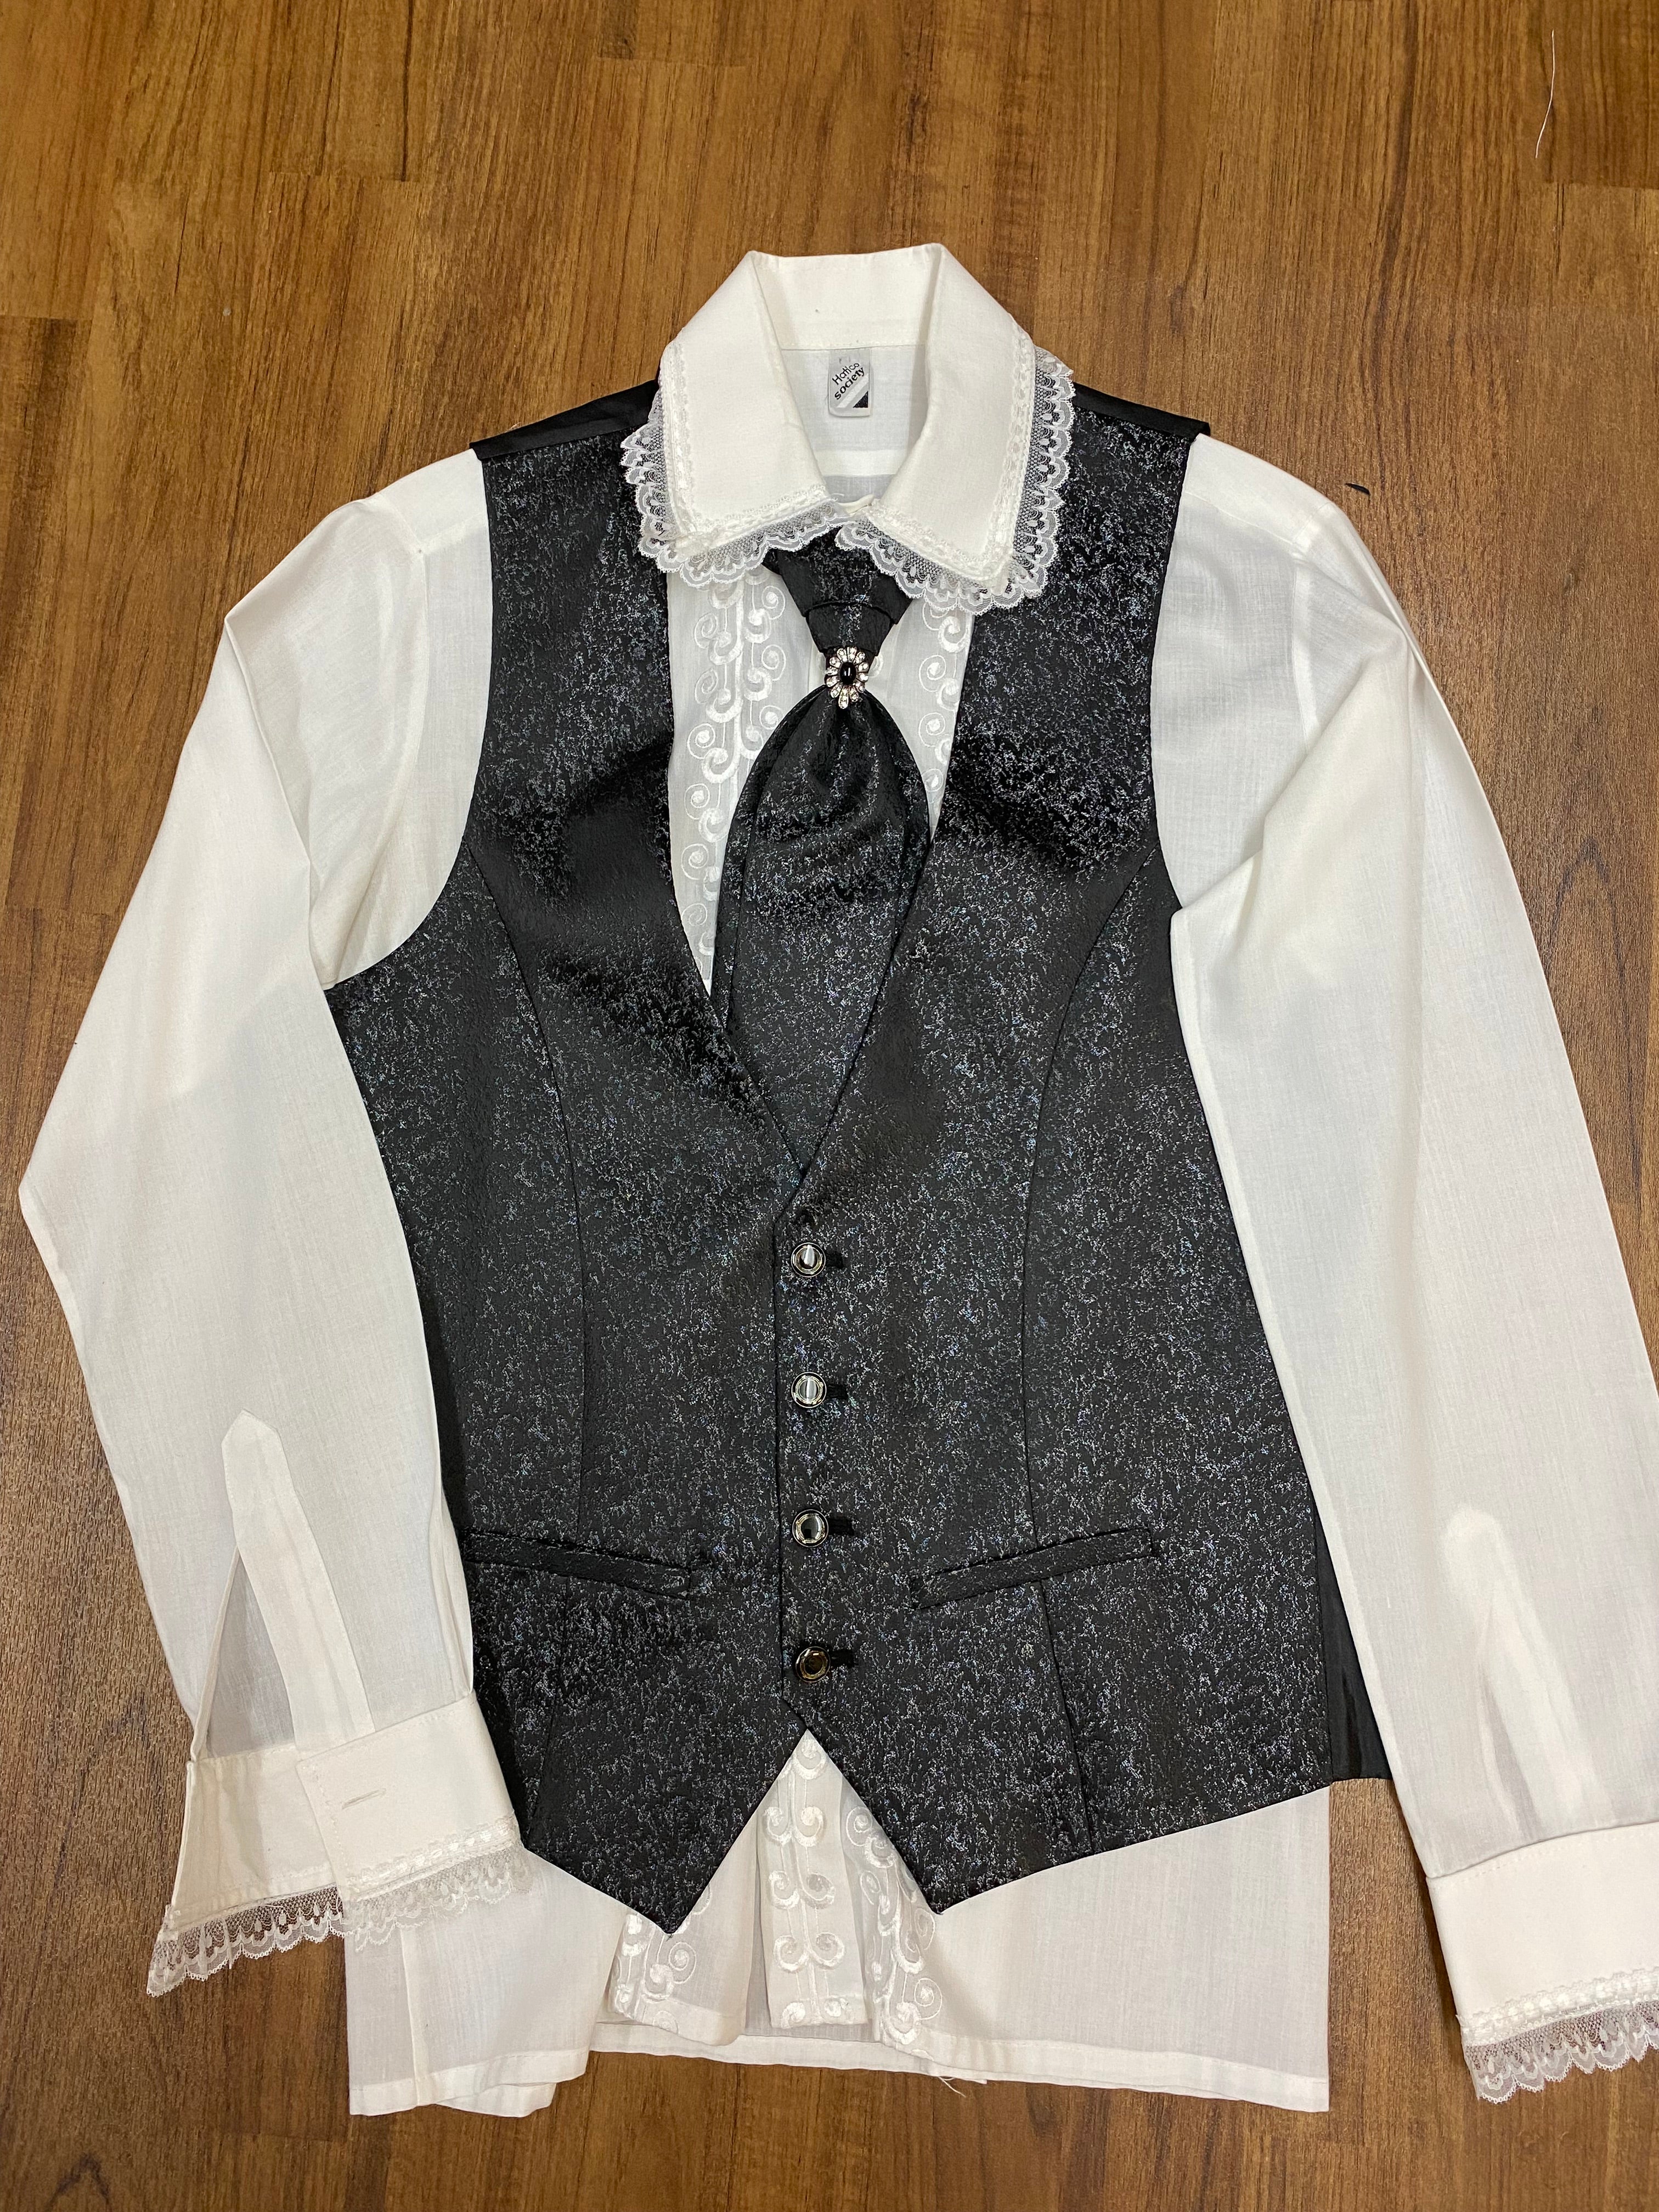 5-teiliger Hochzeitsanzug Wedding Suit Steampunk Barock Gothic Gr.46